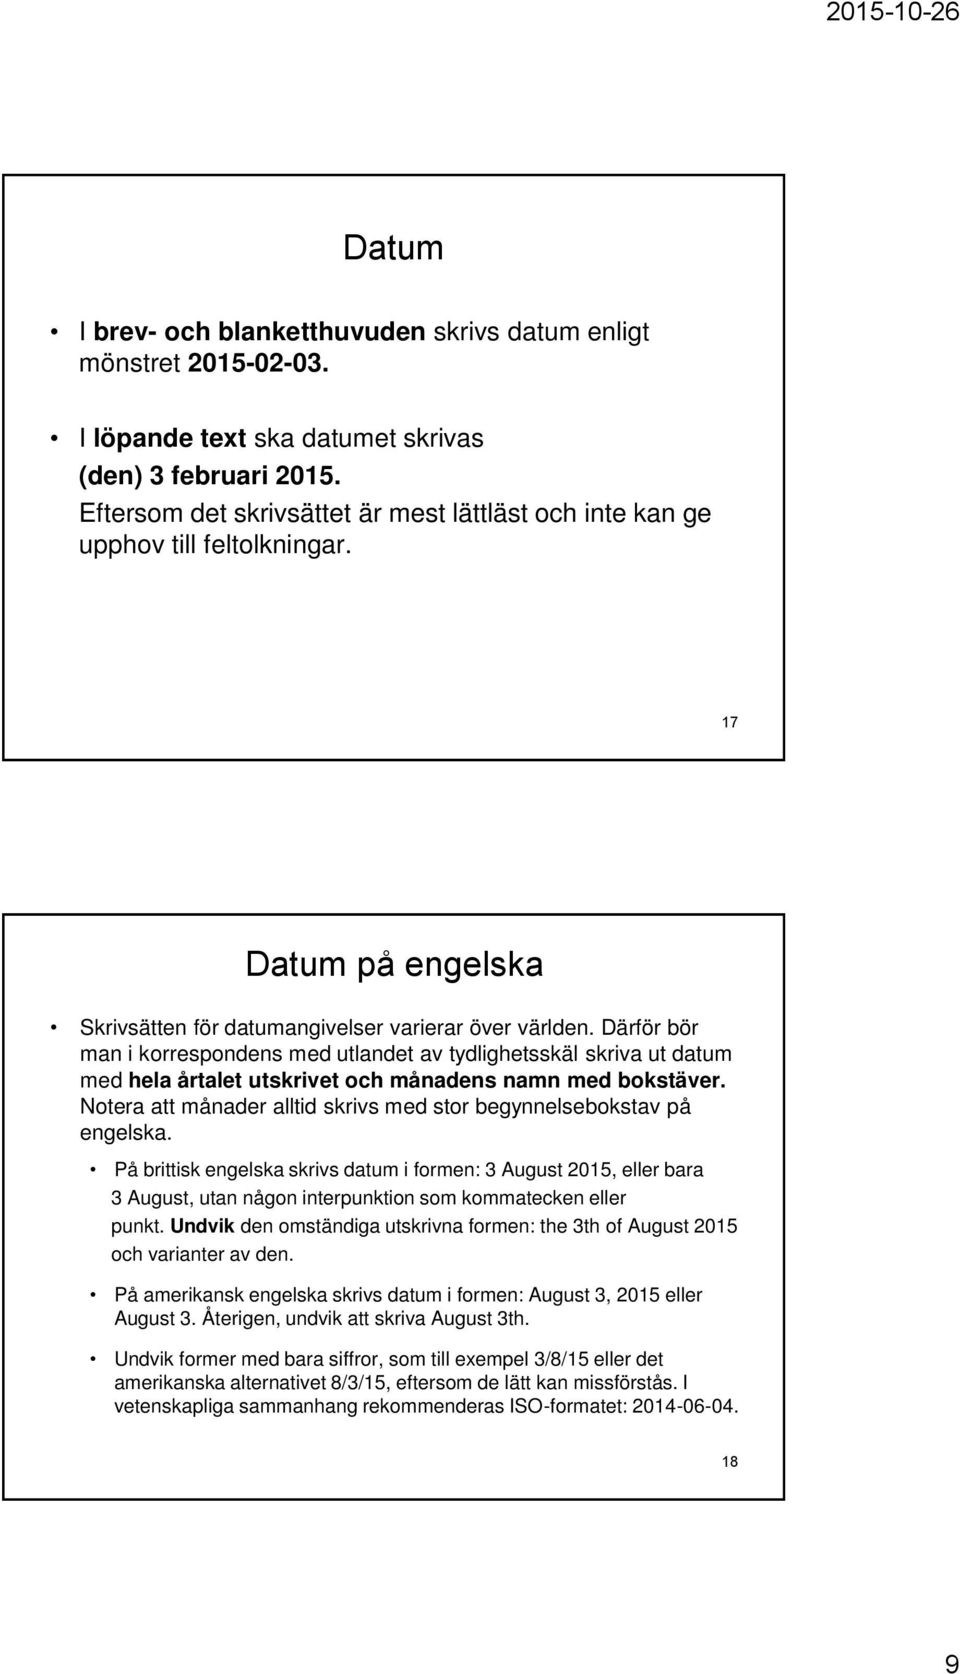 Skrivregler vägen till proffsig patientdokumentation - PDF Gratis ...